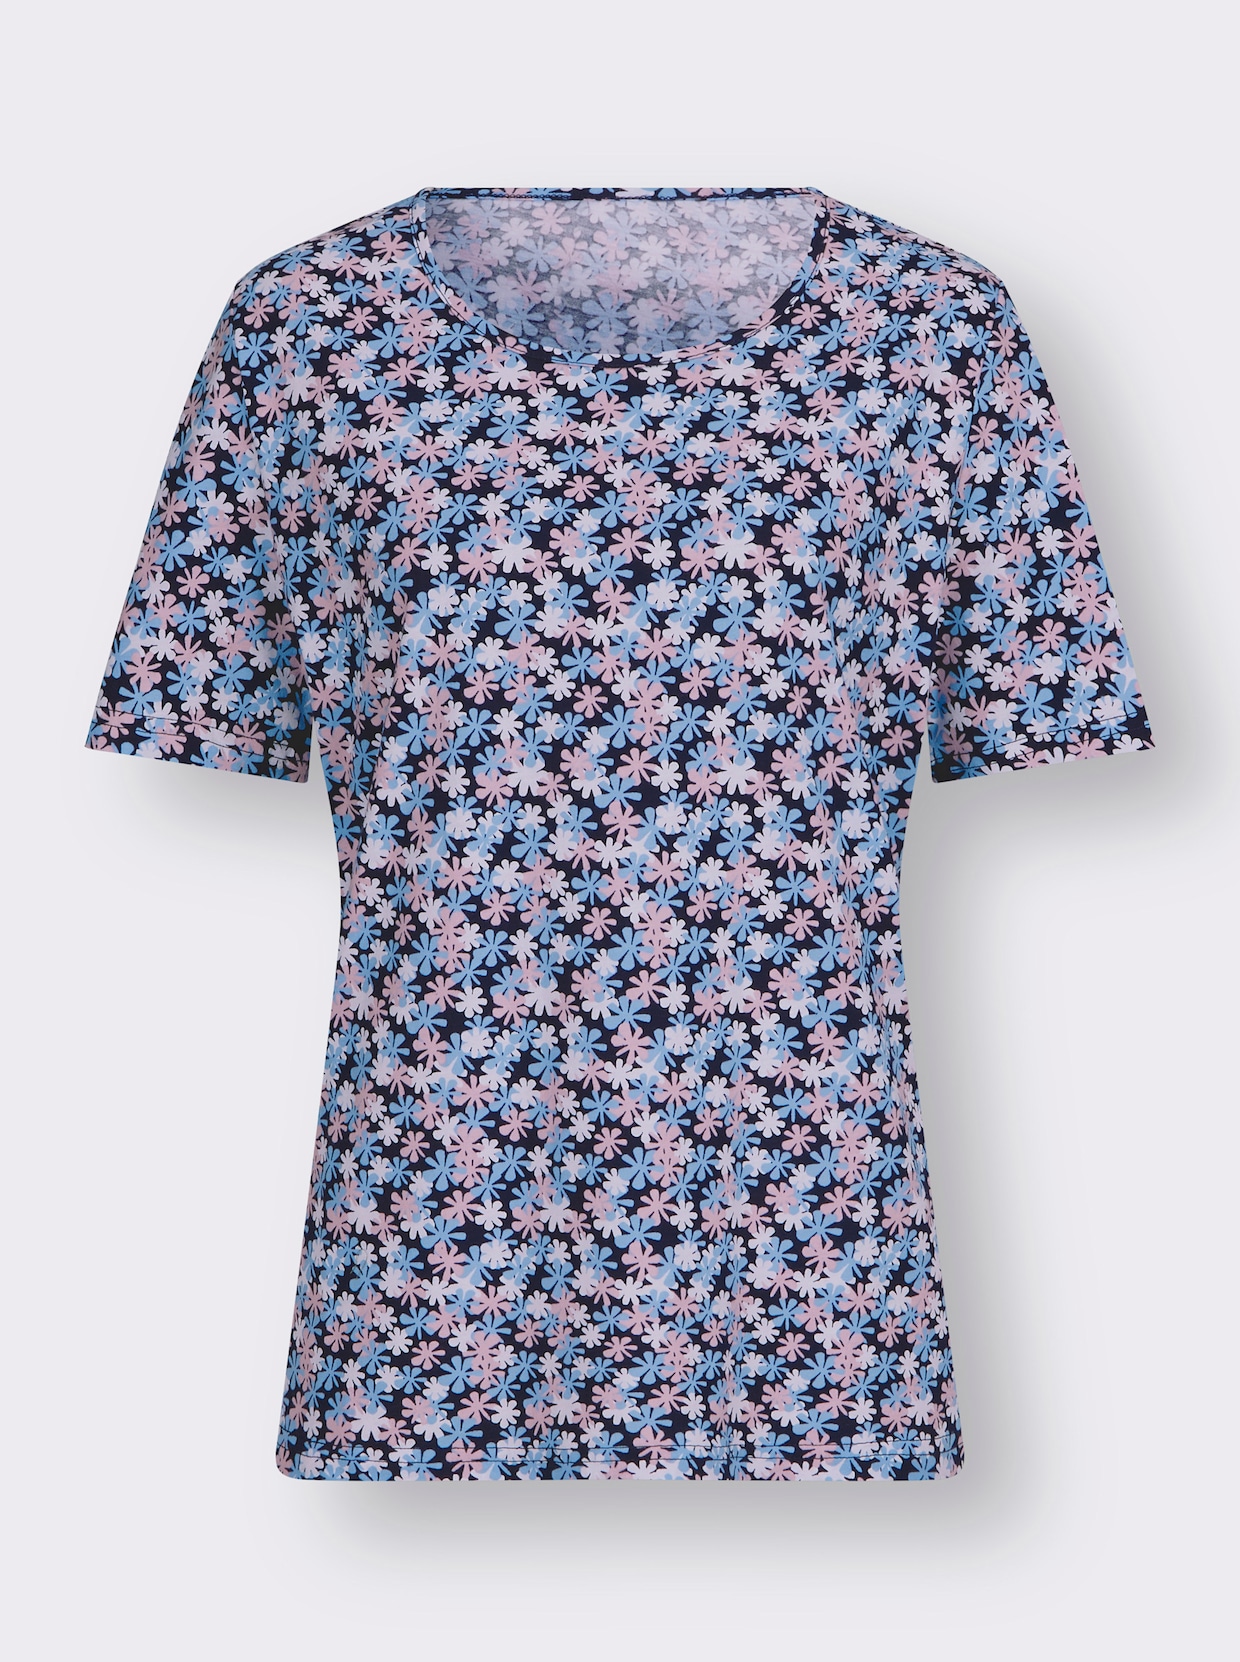 Tričko s krátkým rukávem - bílá-námořnická modrá-potisk